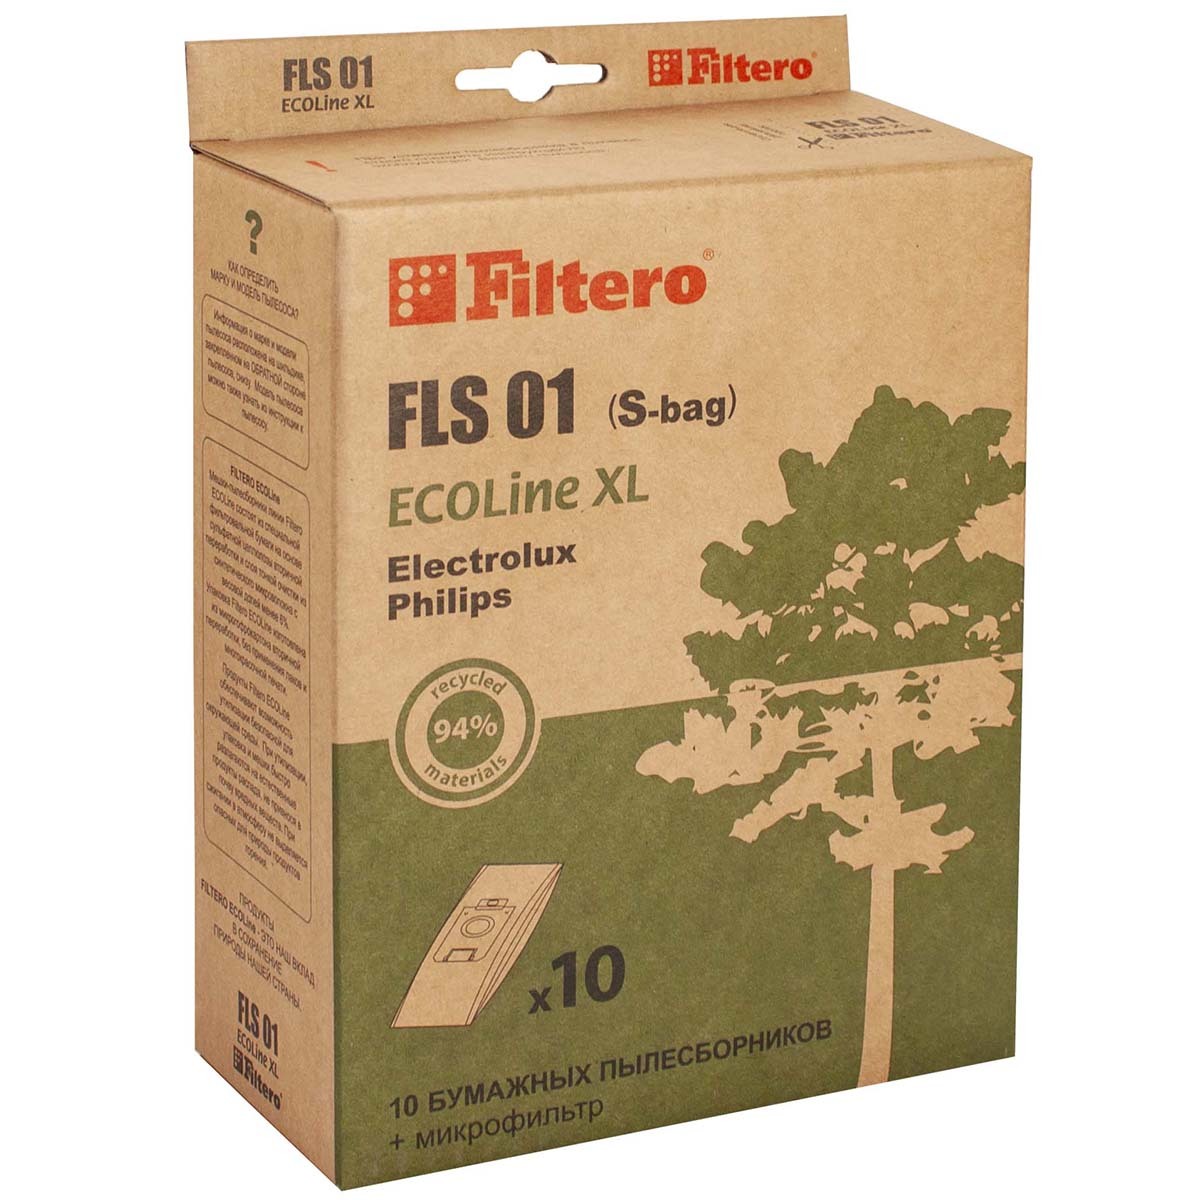 filtero мешки пылесборники fls 01 comfort белый 10 шт Пылесборники Filtero FLS 01 (S-bag) (10+) XL ECOLine